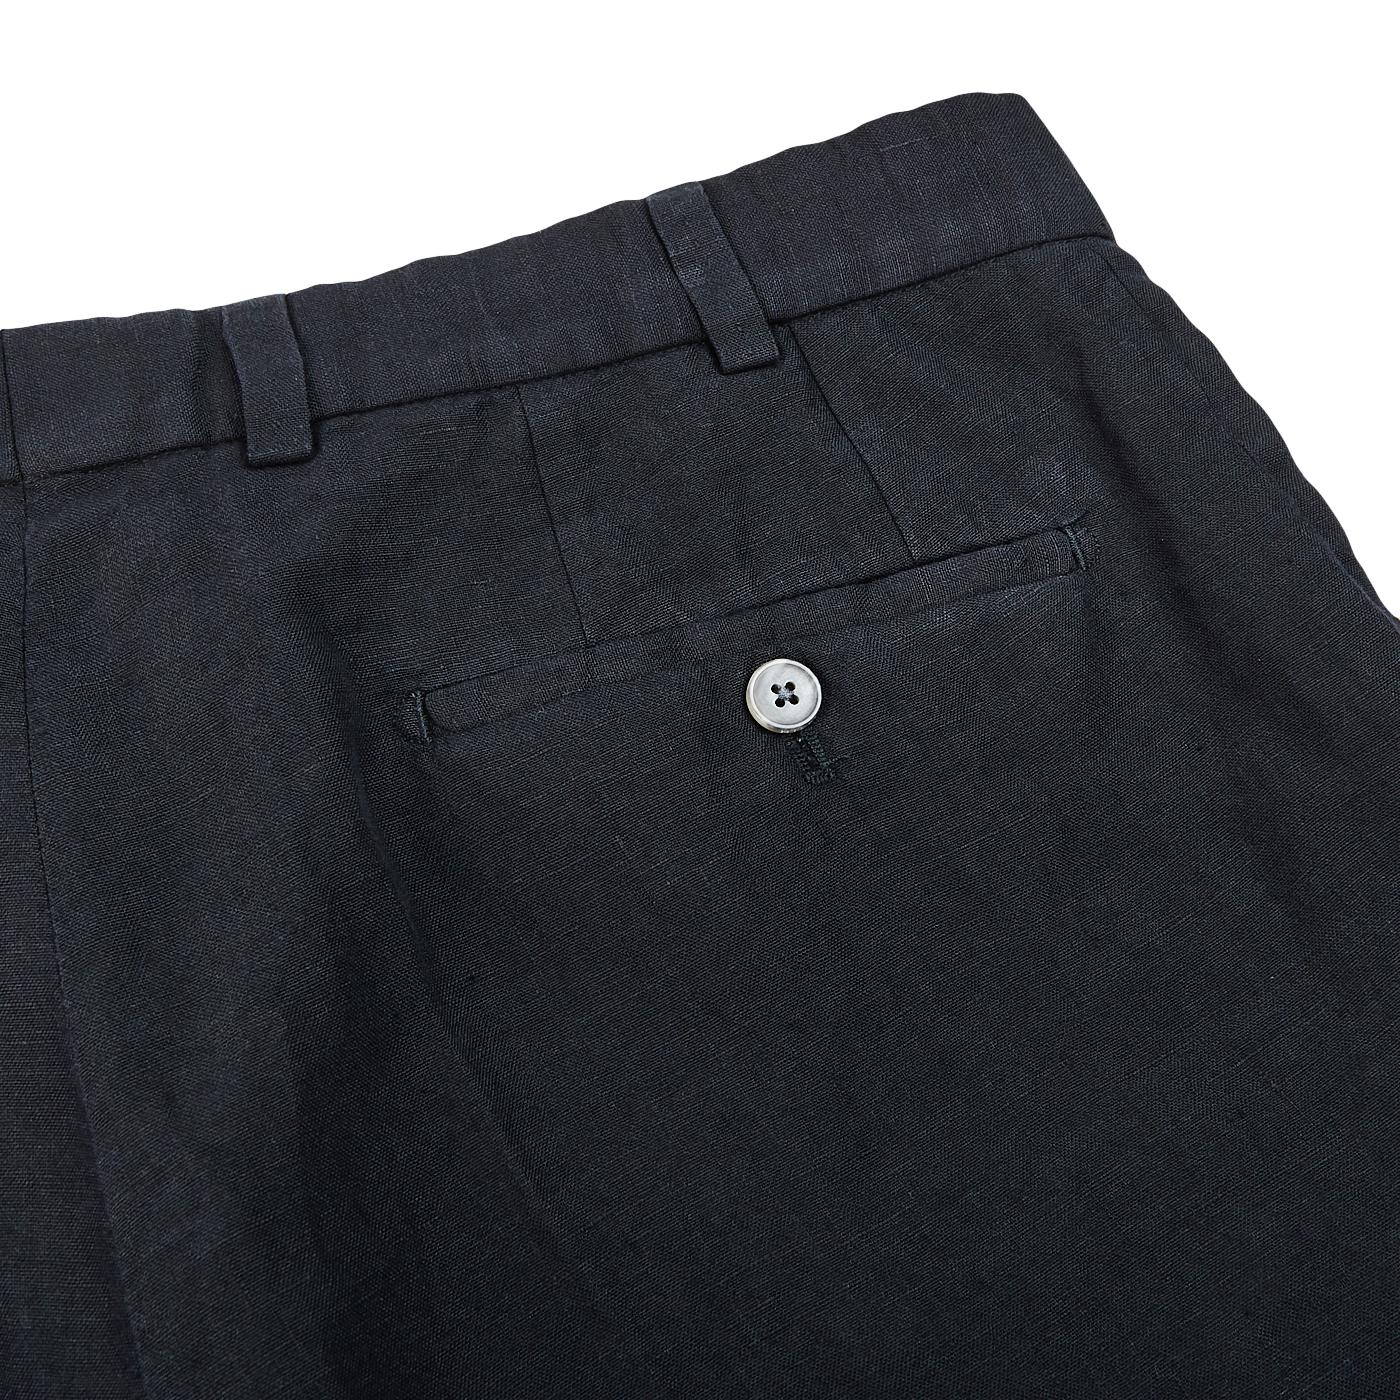 Hiltl Black Washed Linen Regular Fit Chinos Pocket